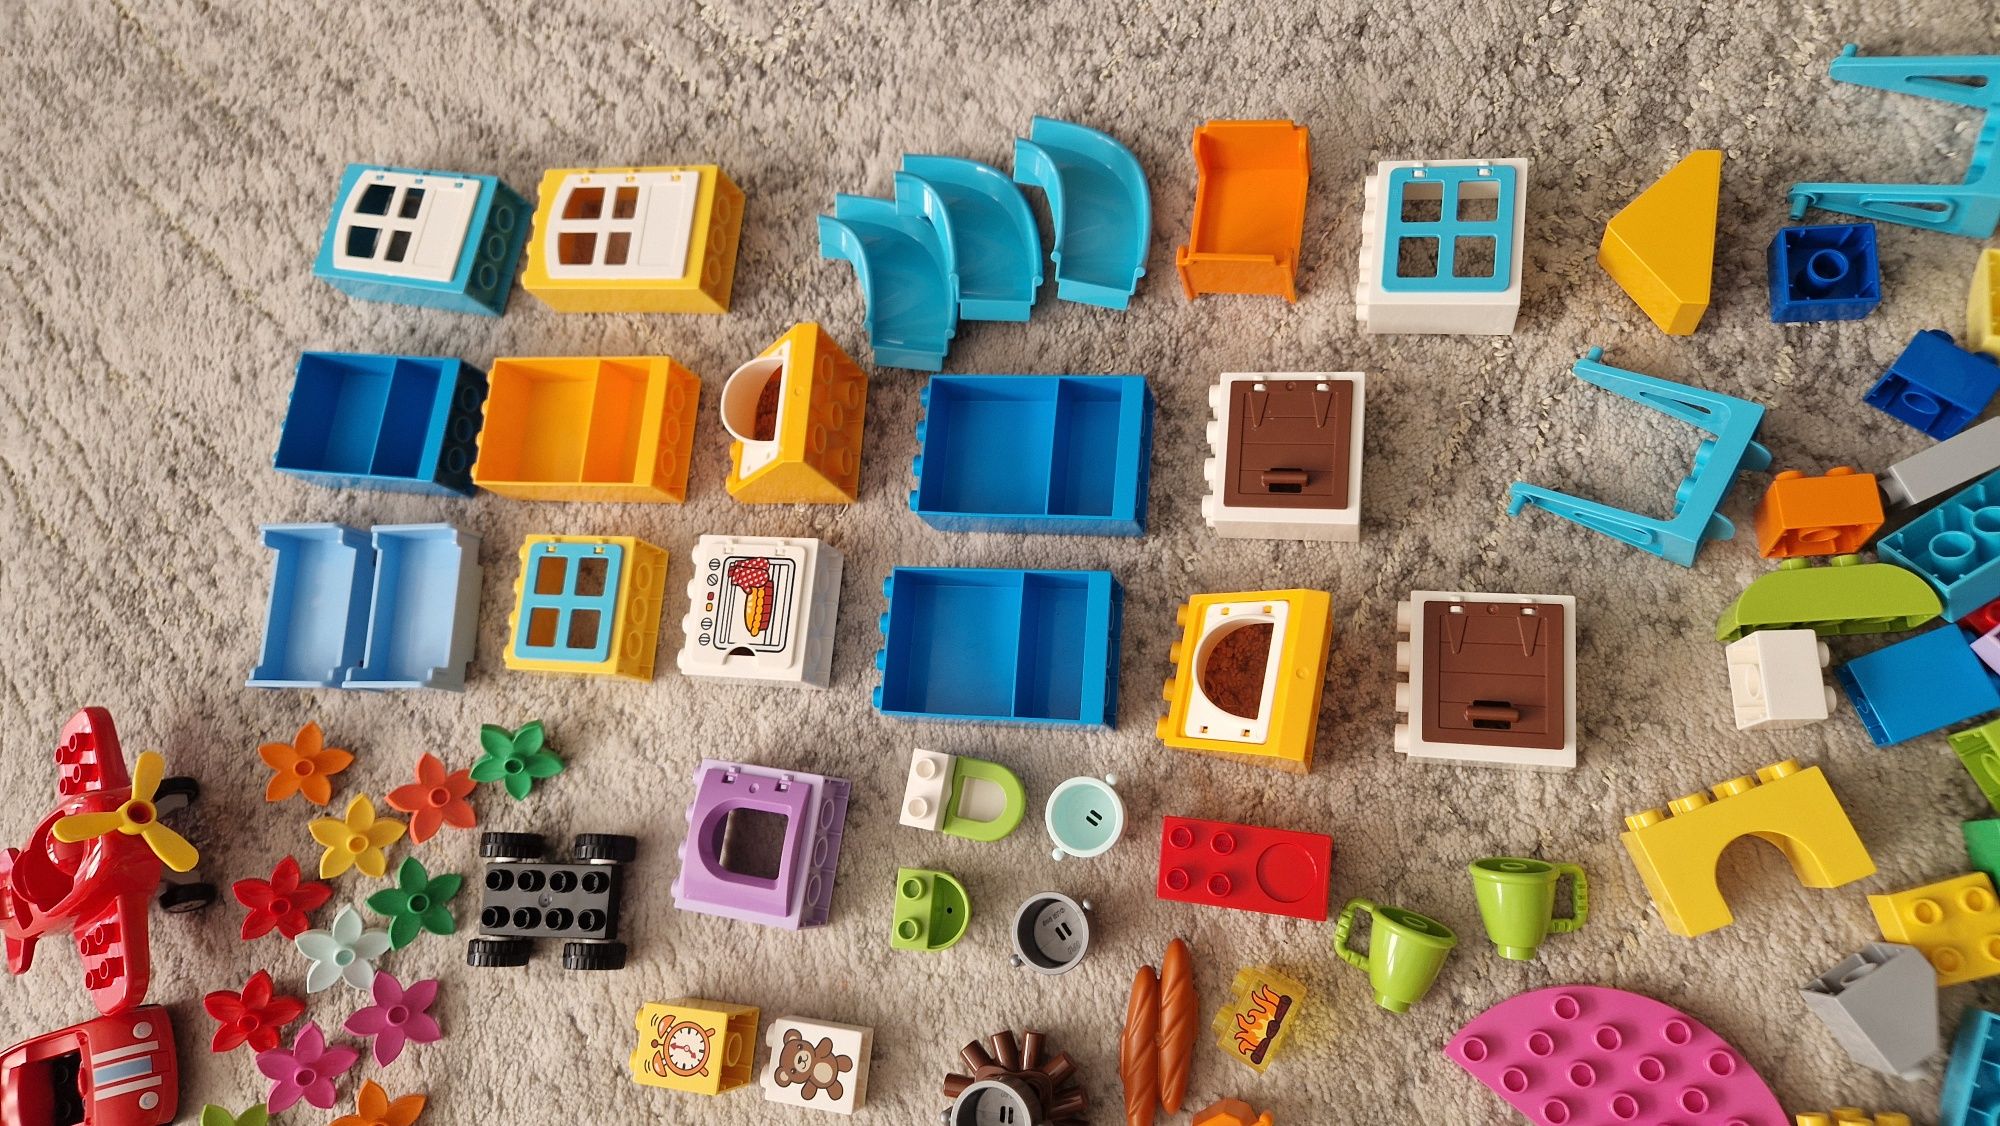 OGROMNY zestaw Lego Duplo, dwa pudełka, płytka, dom, zwierzęta